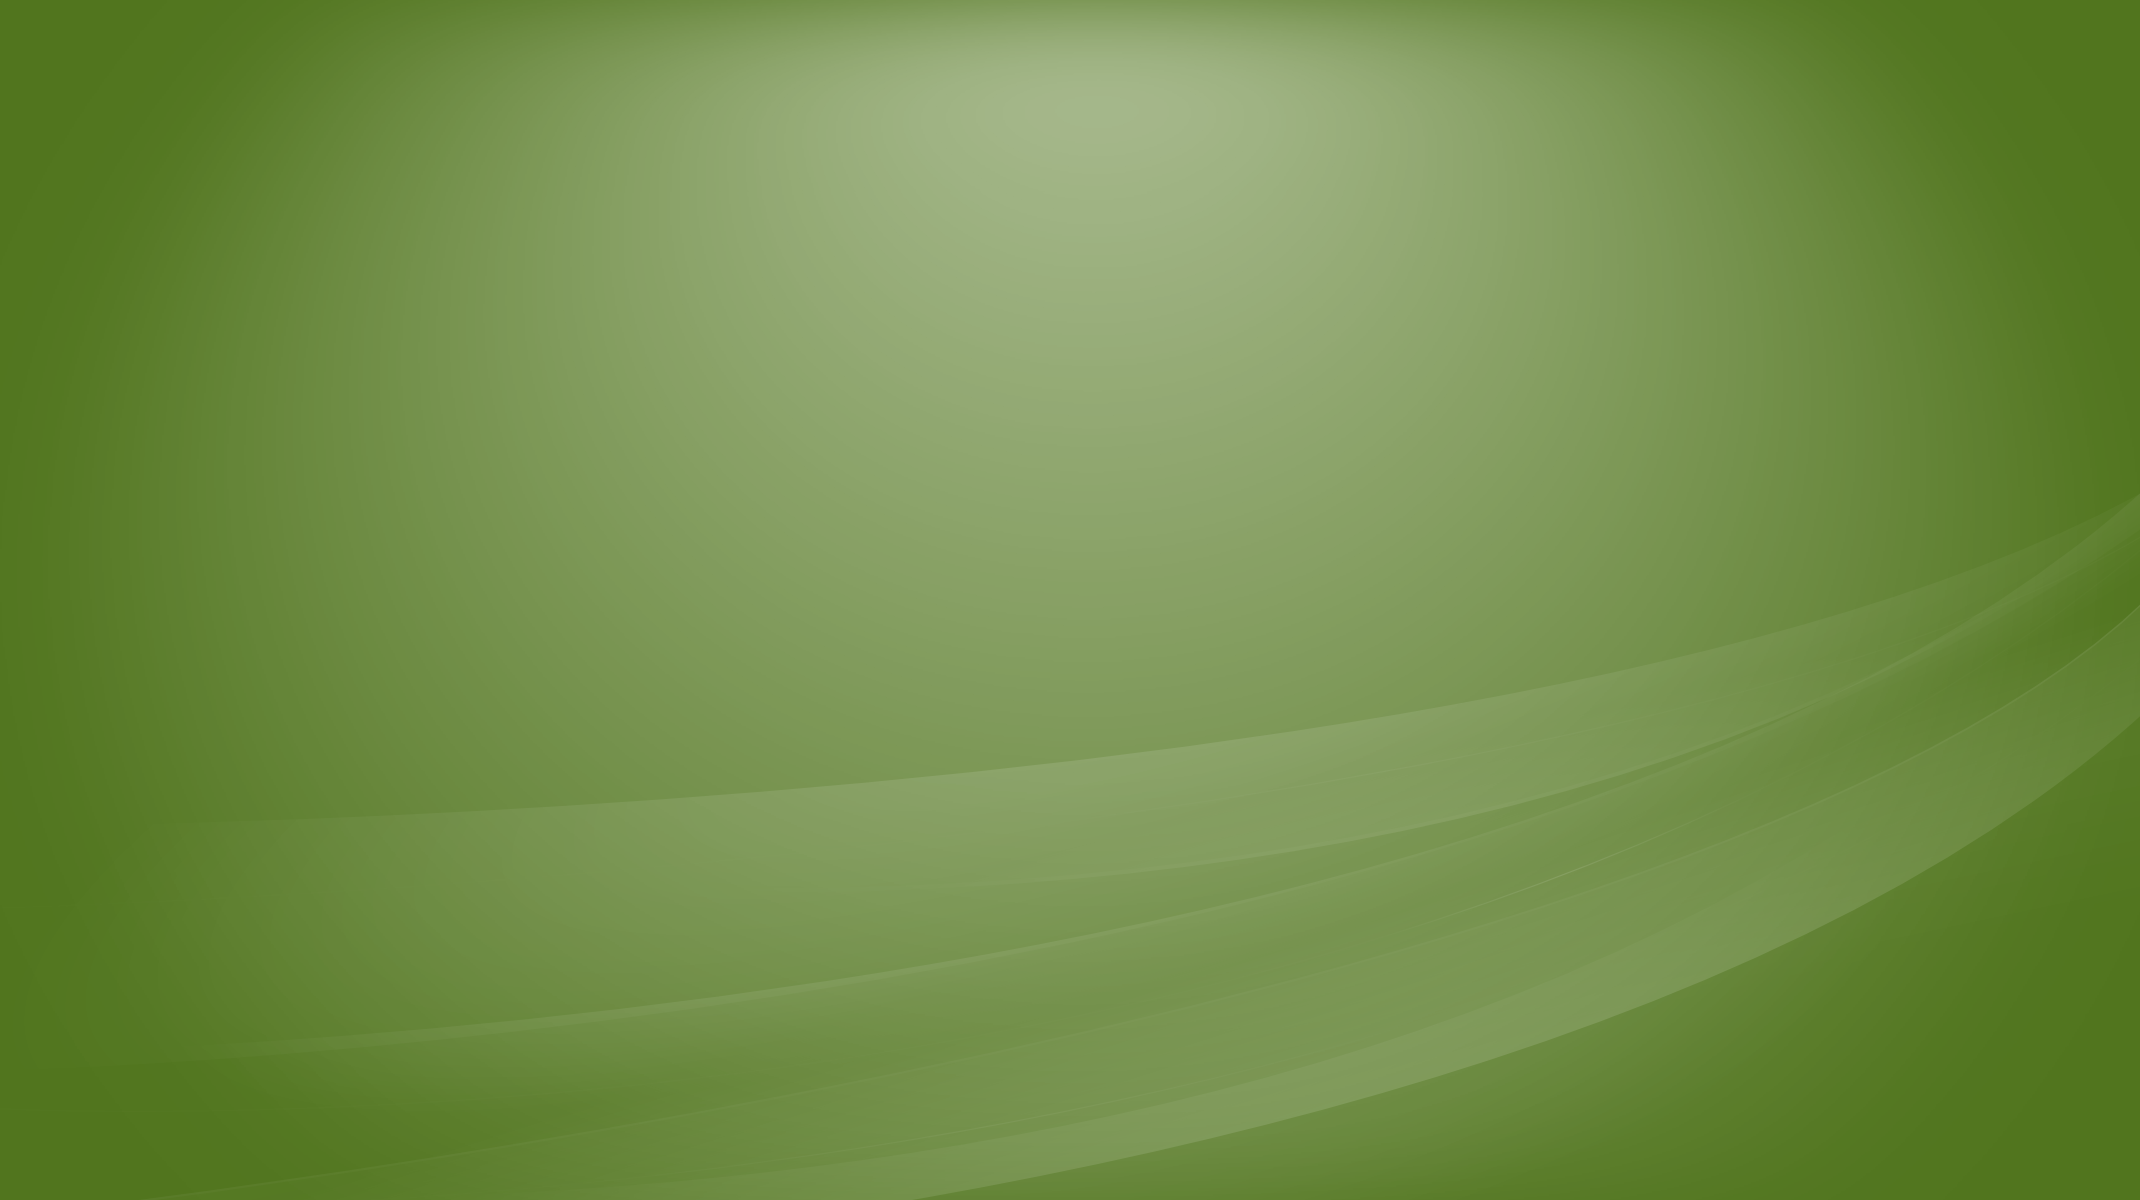 Linux Mint Wallpaper 4425 Image. Areahd